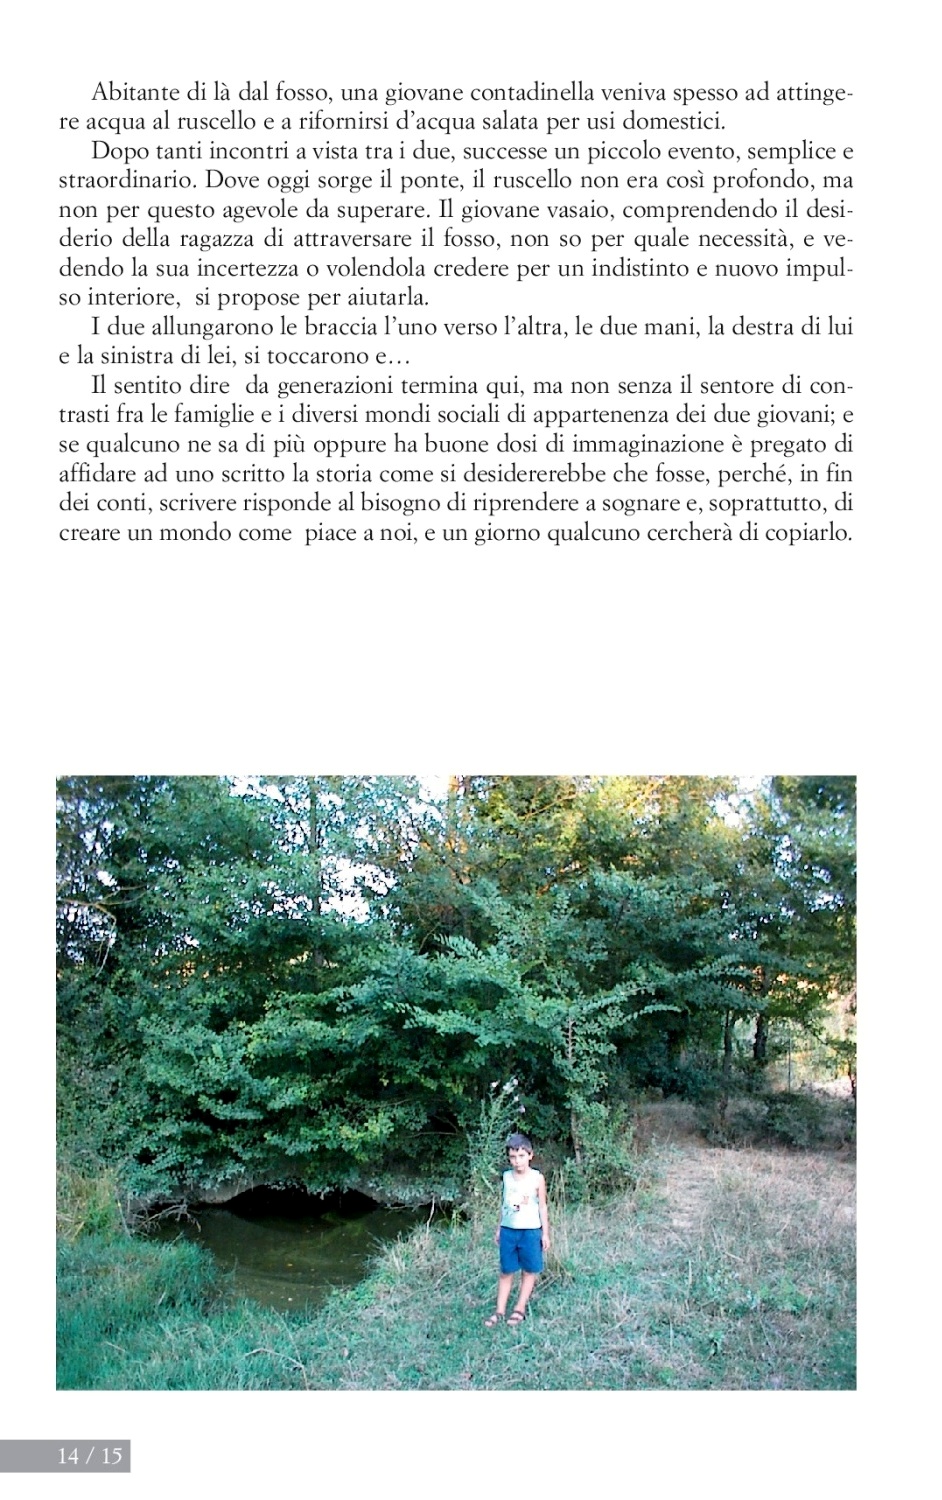 La torr i arduna tutti 2005 p.014